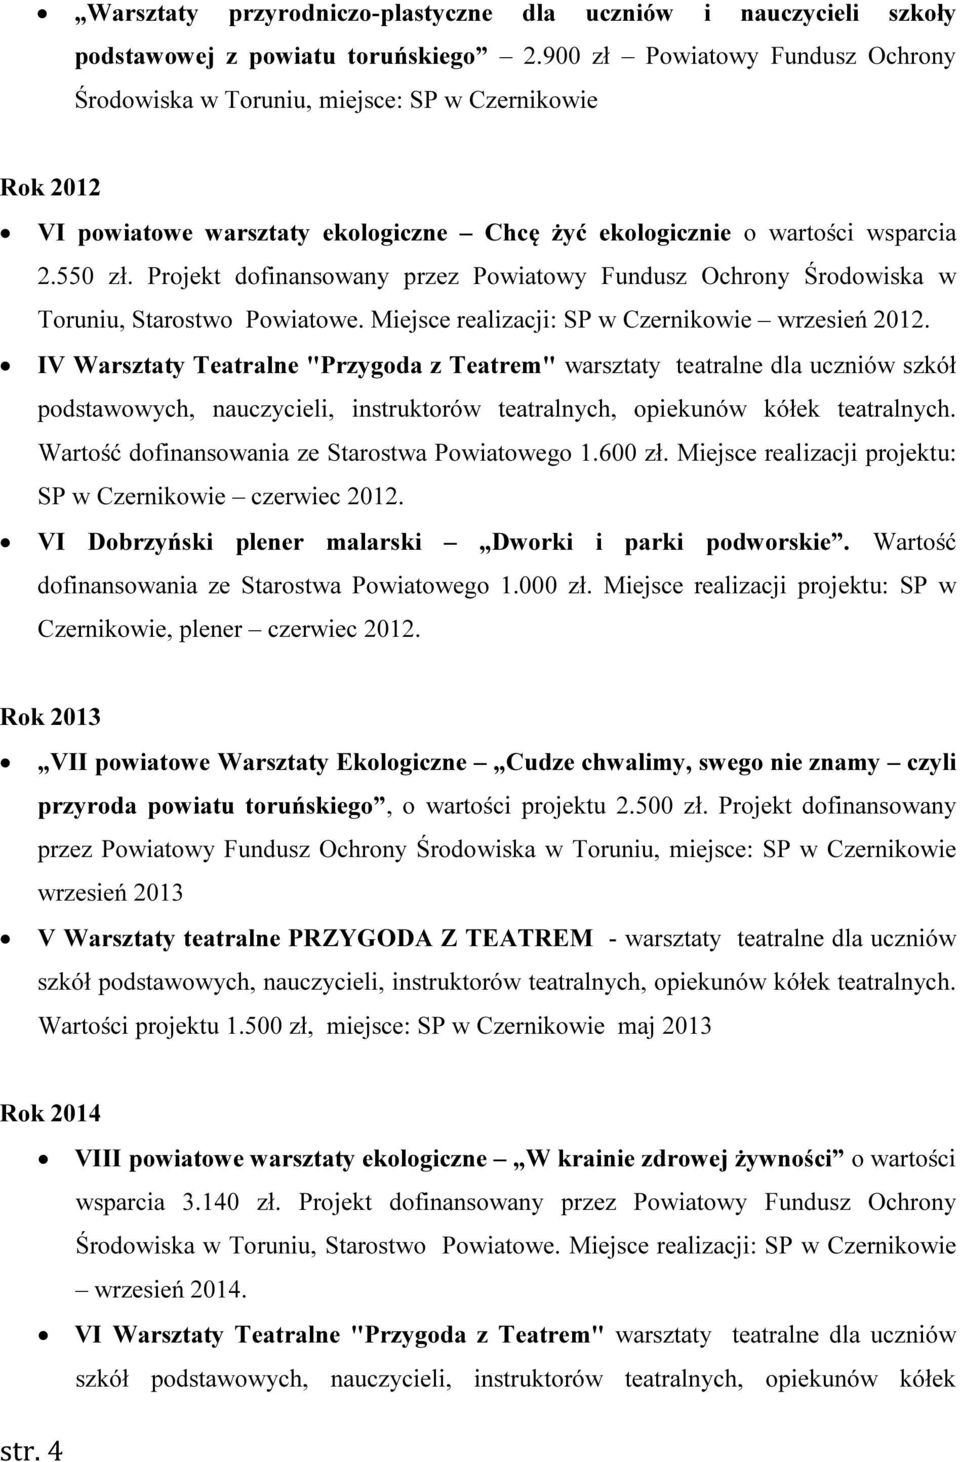 Projekt dofinansowany przez Powiatowy Fundusz Ochrony Środowiska w Toruniu, Starostwo Powiatowe. Miejsce realizacji: SP w Czernikowie wrzesień 2012.